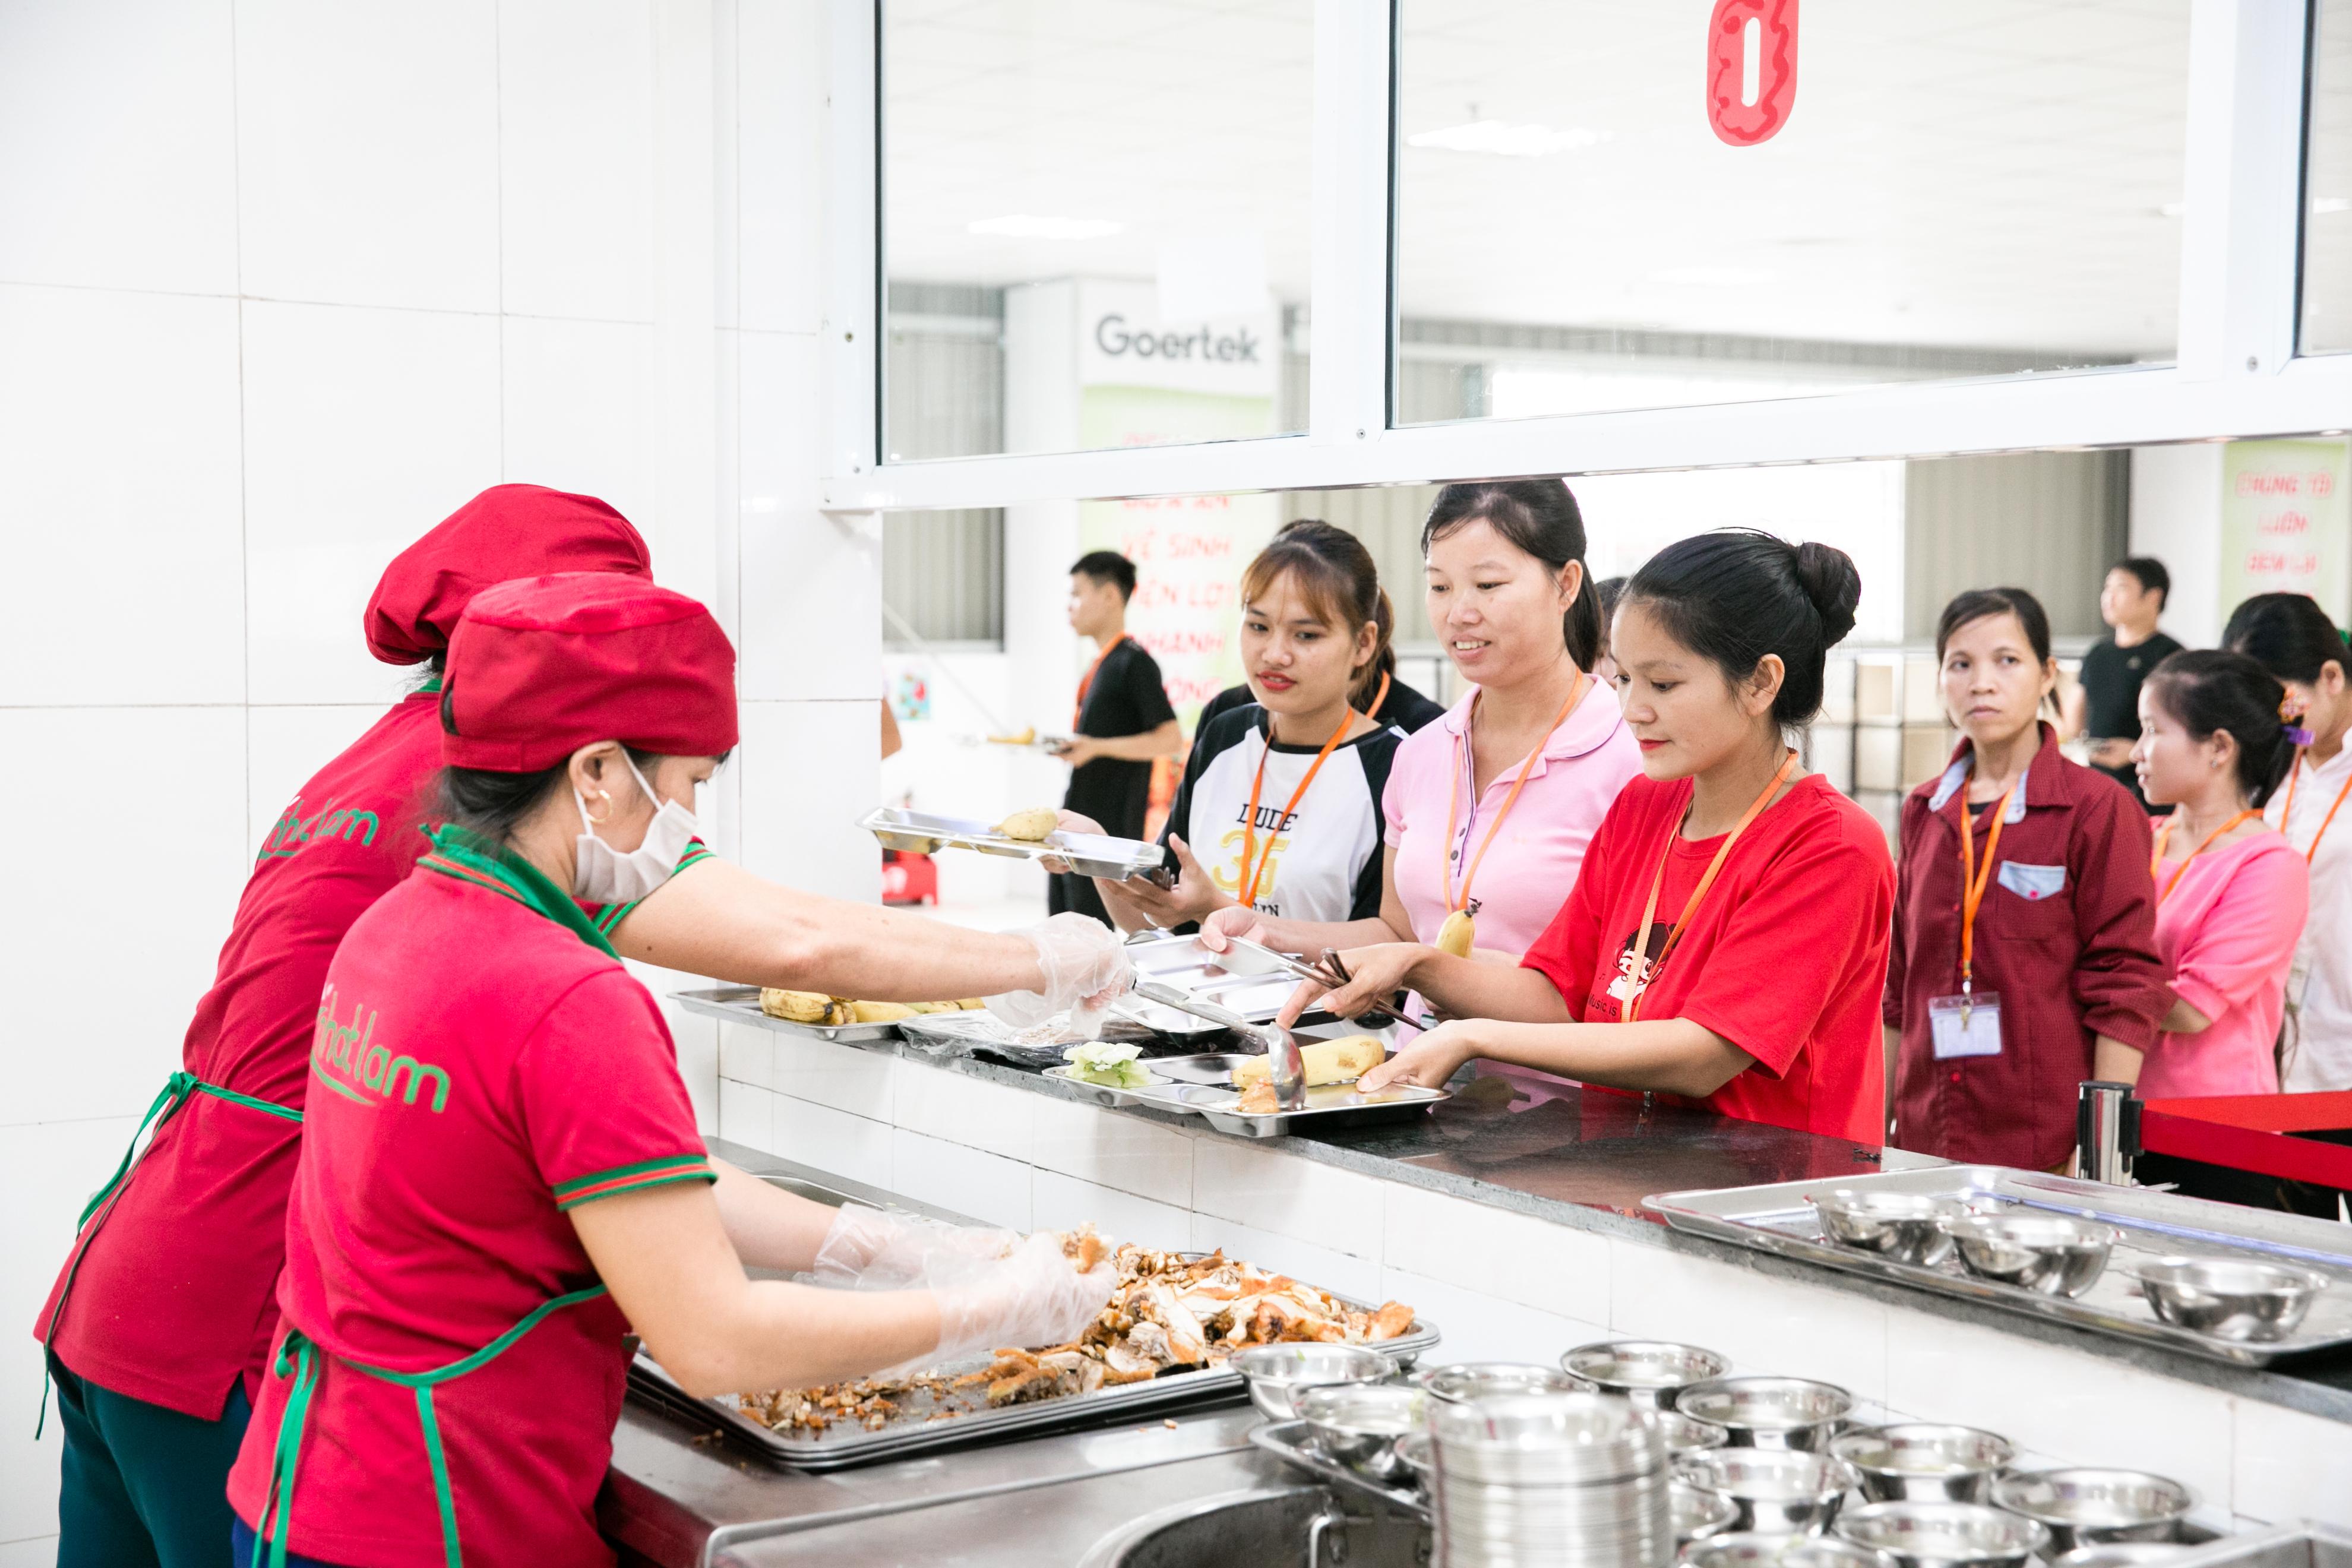 phục vụ nhà ăn D5 Goertek - Suất ăn Công nghiệp Nhật Lâm - Công ty CP Thương Mại & Dịch Vụ Nhật Lâm